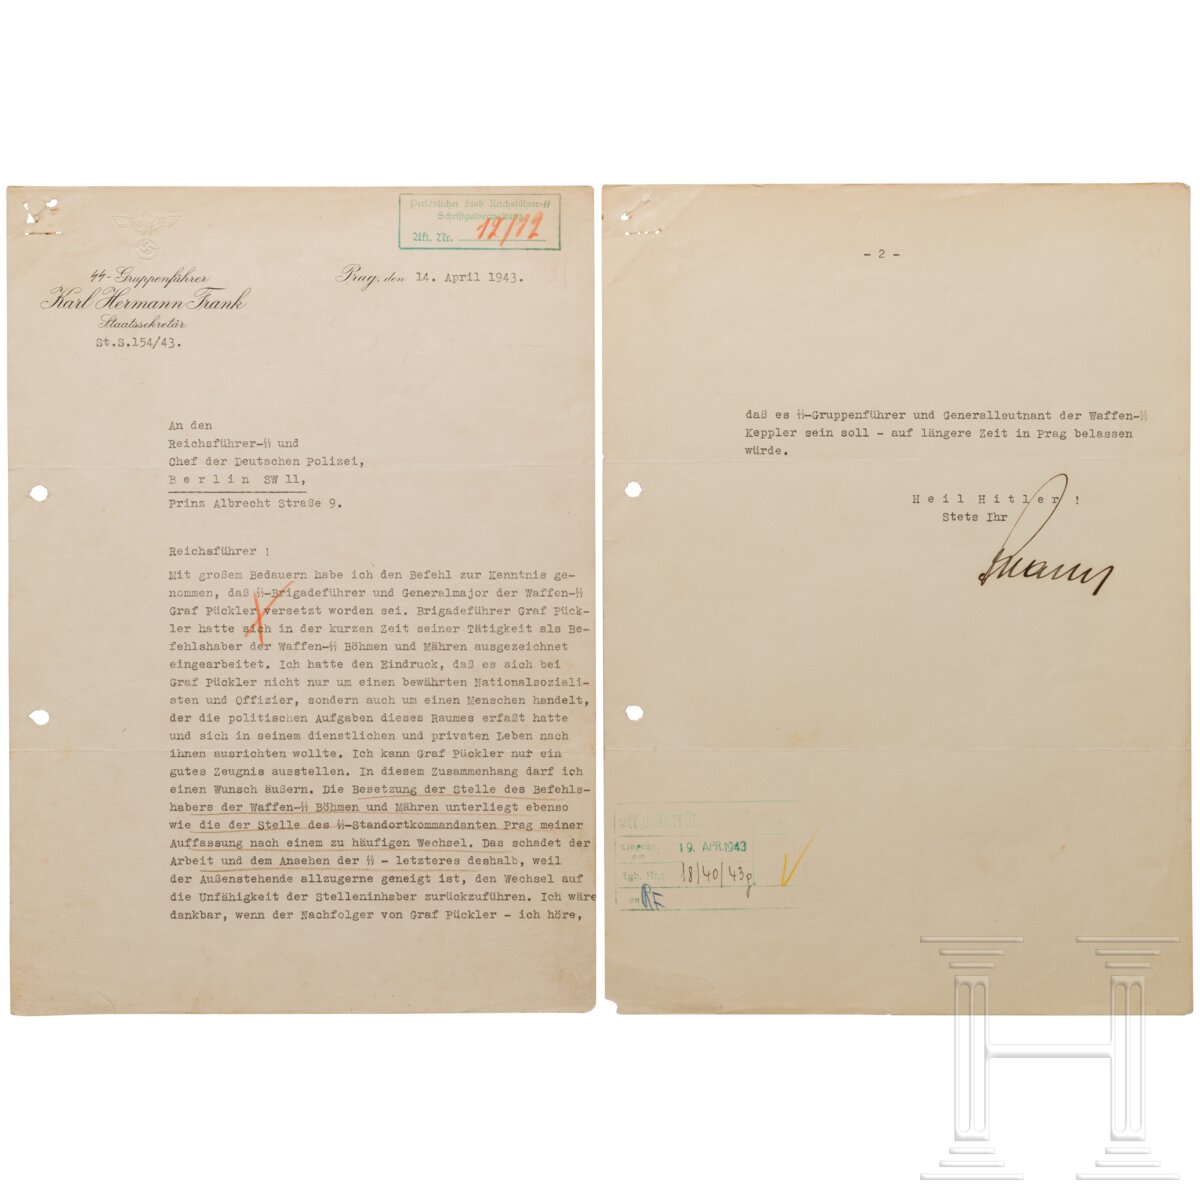 SS-Gruf. Karl Hermann Frank - signierter Brief an Heinrich Himmler vom 14.4.1943